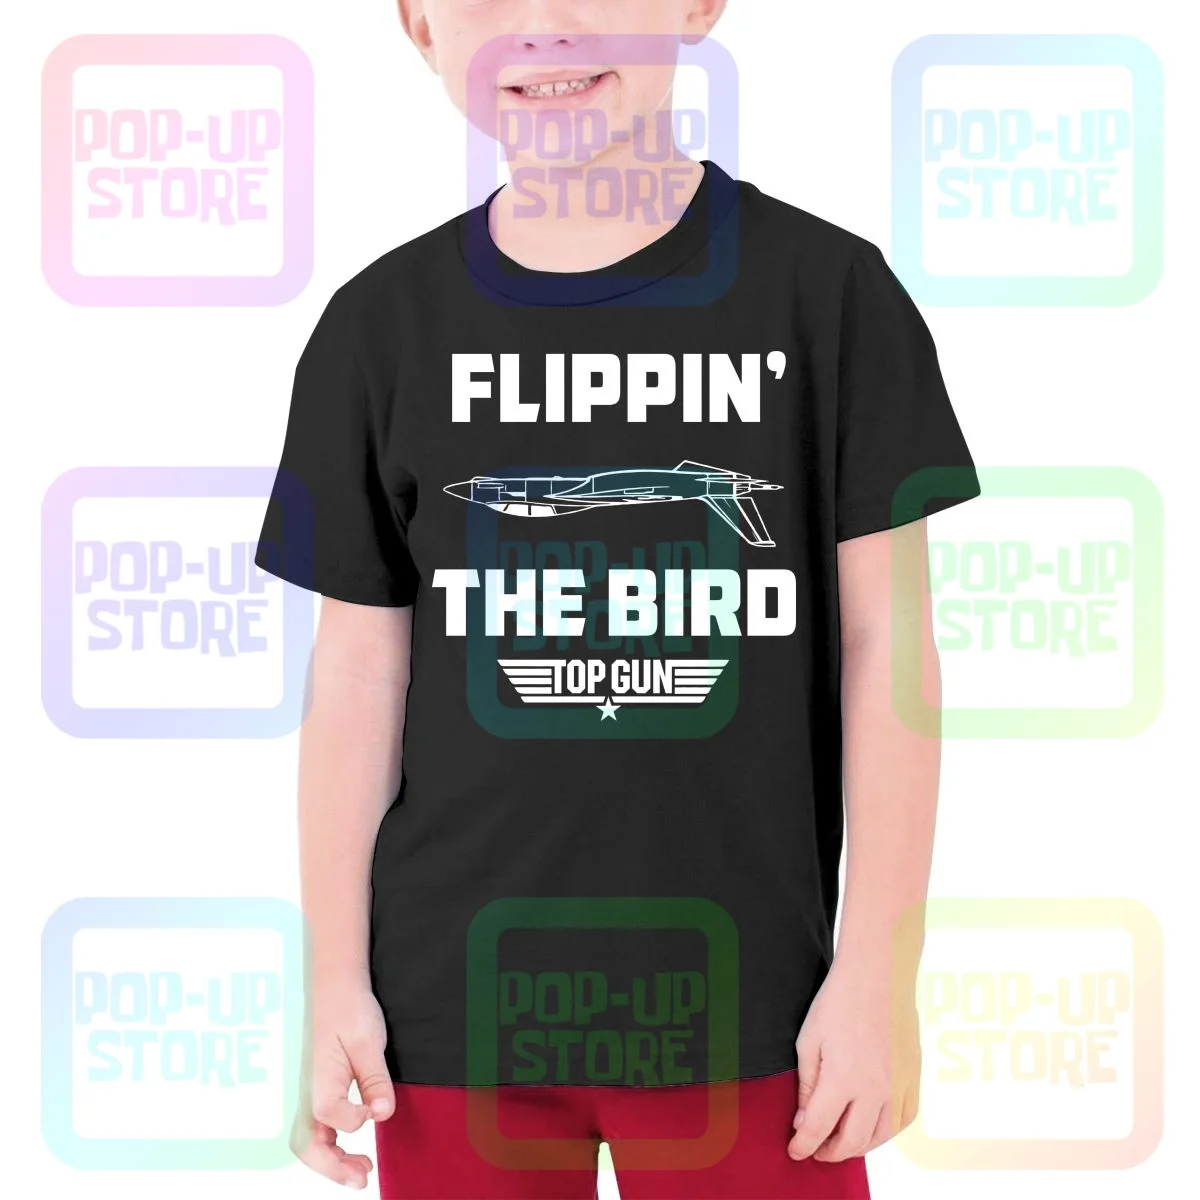 Top Gun Flippin F14 Tomcat Maverick Подростковая футболка Детская Футболка Милый Дизайн Мода Лучшее качество